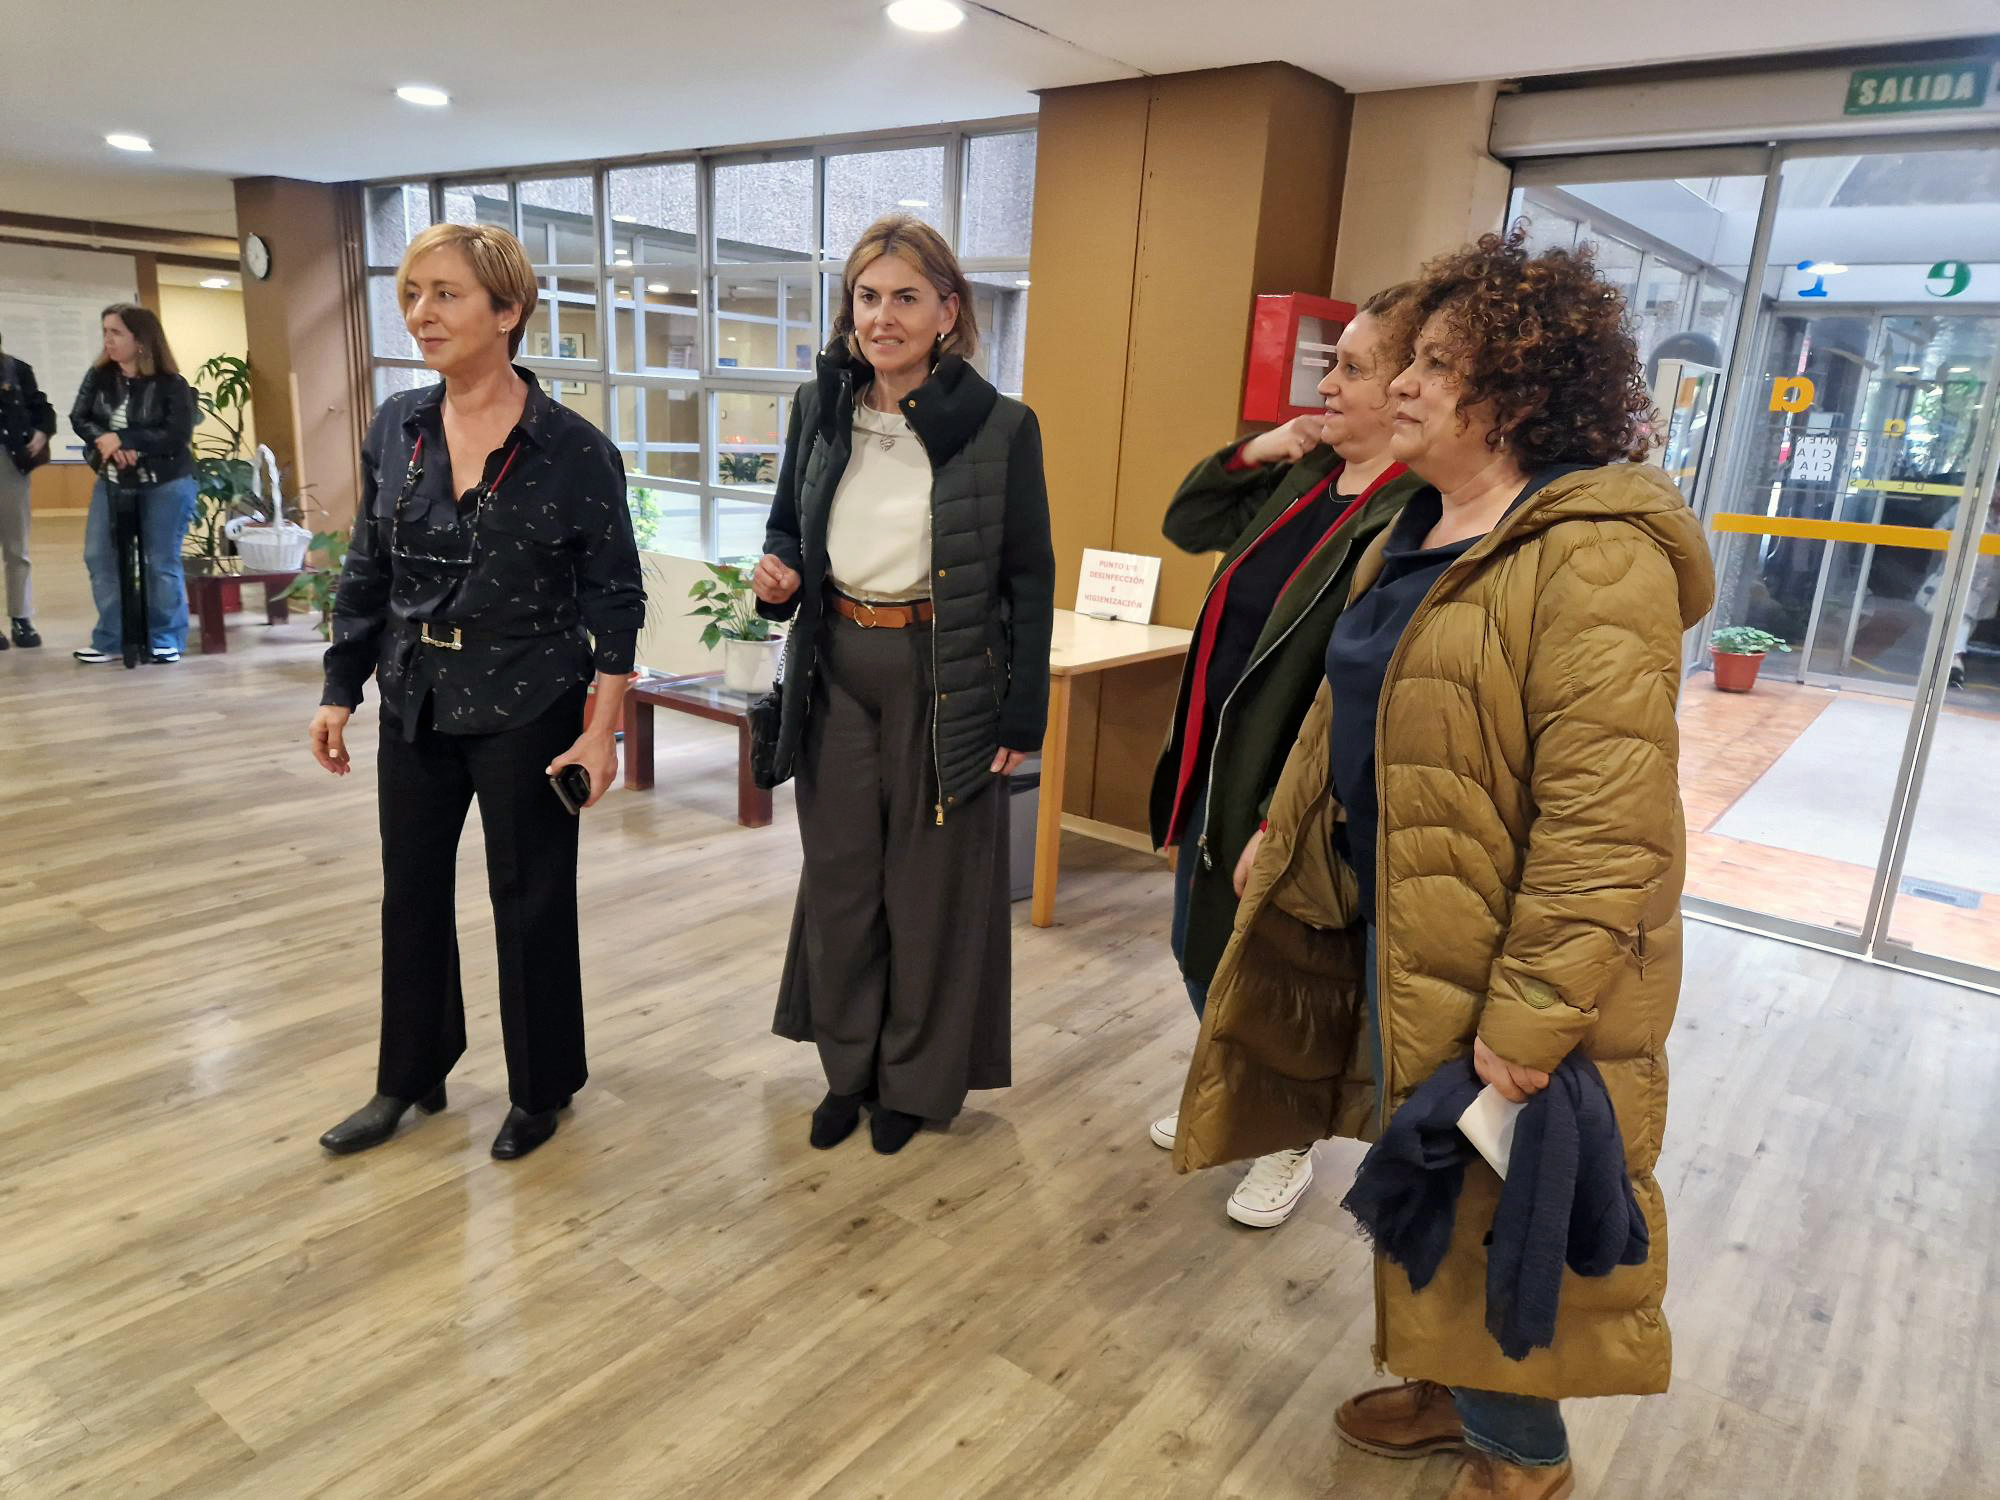 La unidad de convalecencia de la Residencia Mixta de Gijón/Xixón duplica su capacidad hasta las 26 plazas con pacientes derivados del Hospital del Cabueñes